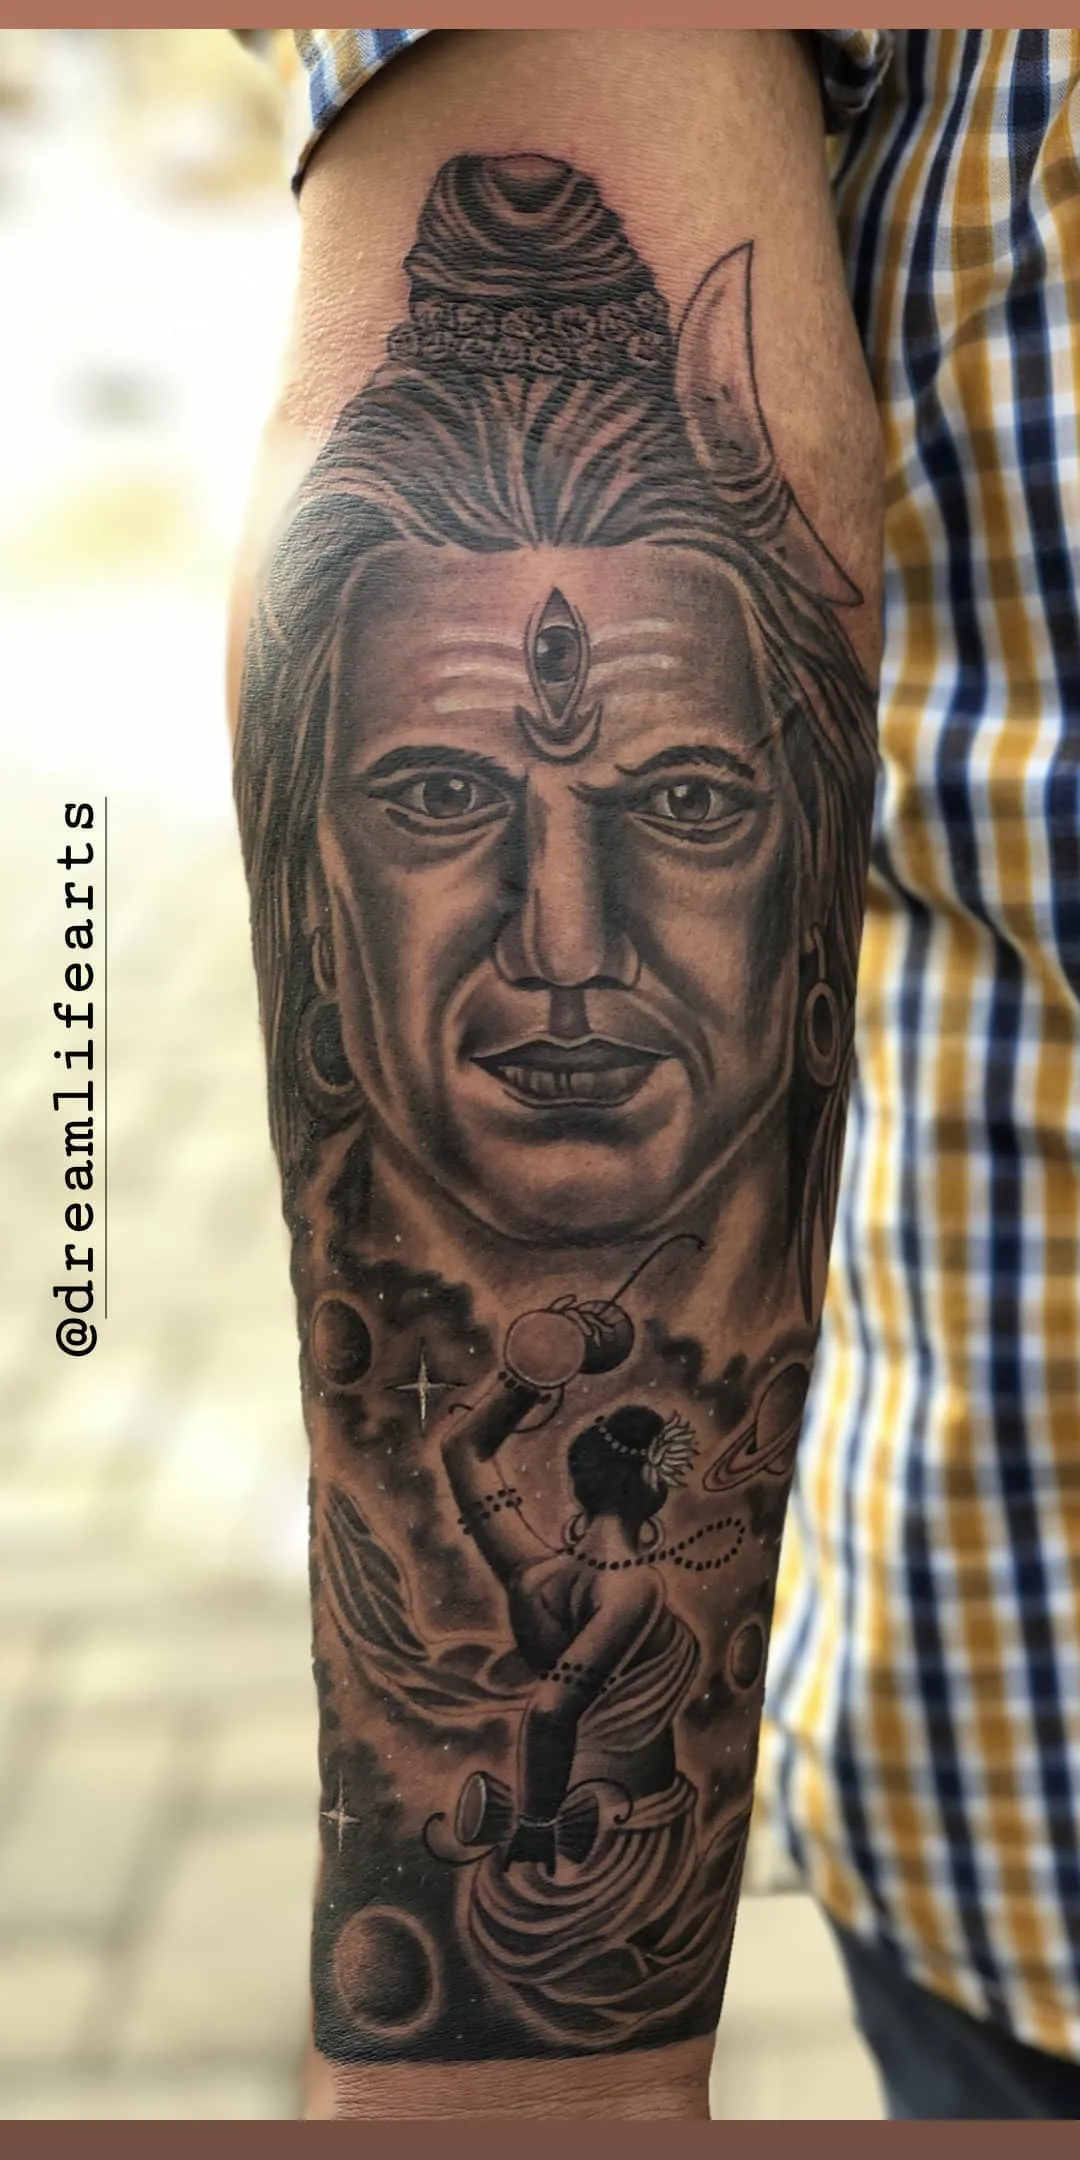 Shiva Tattoos - N.A Tattoo Studio